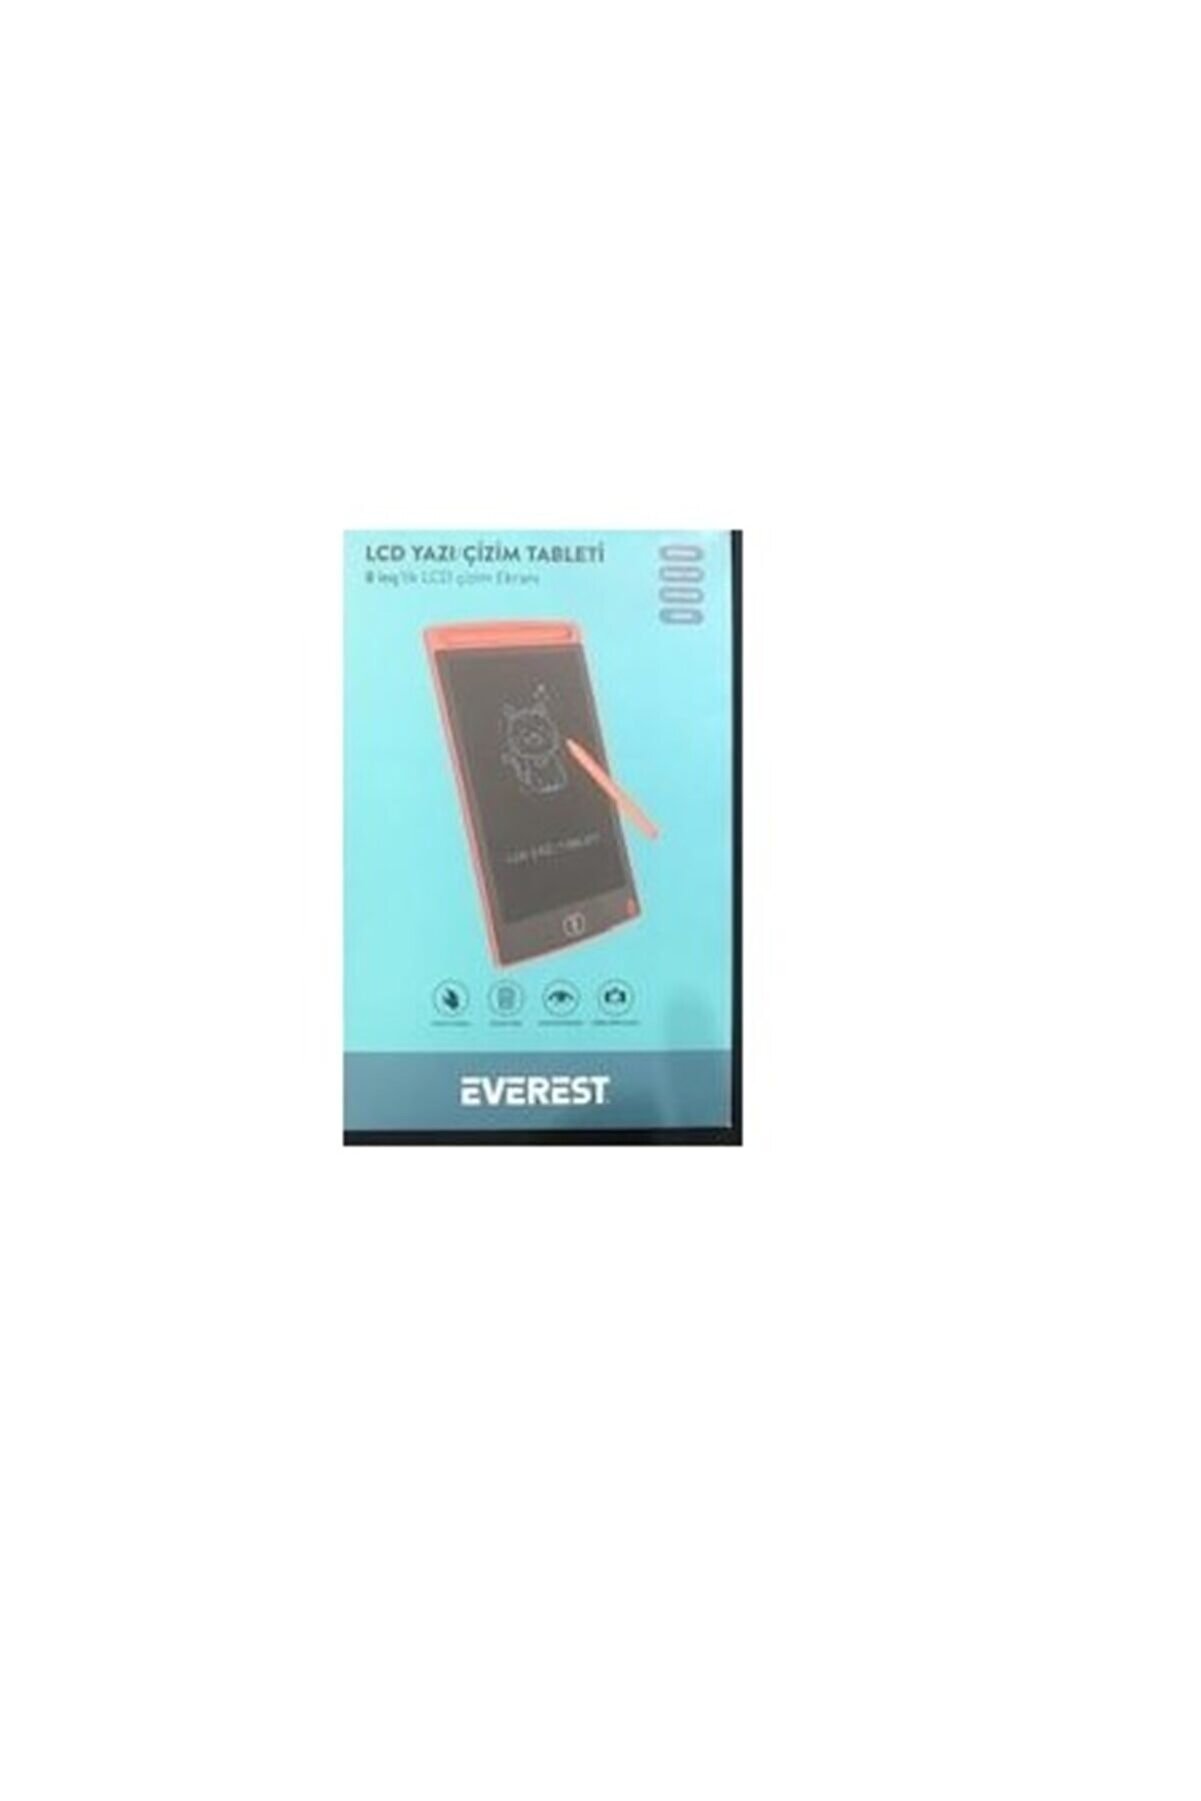 Everest Ev-dy100 8,5" Kırmızı Tek Tuşla Sil Dijital Yazı Tahtası Yazı Alanı 125x175mm Lcd Yazı Çizim Tableti